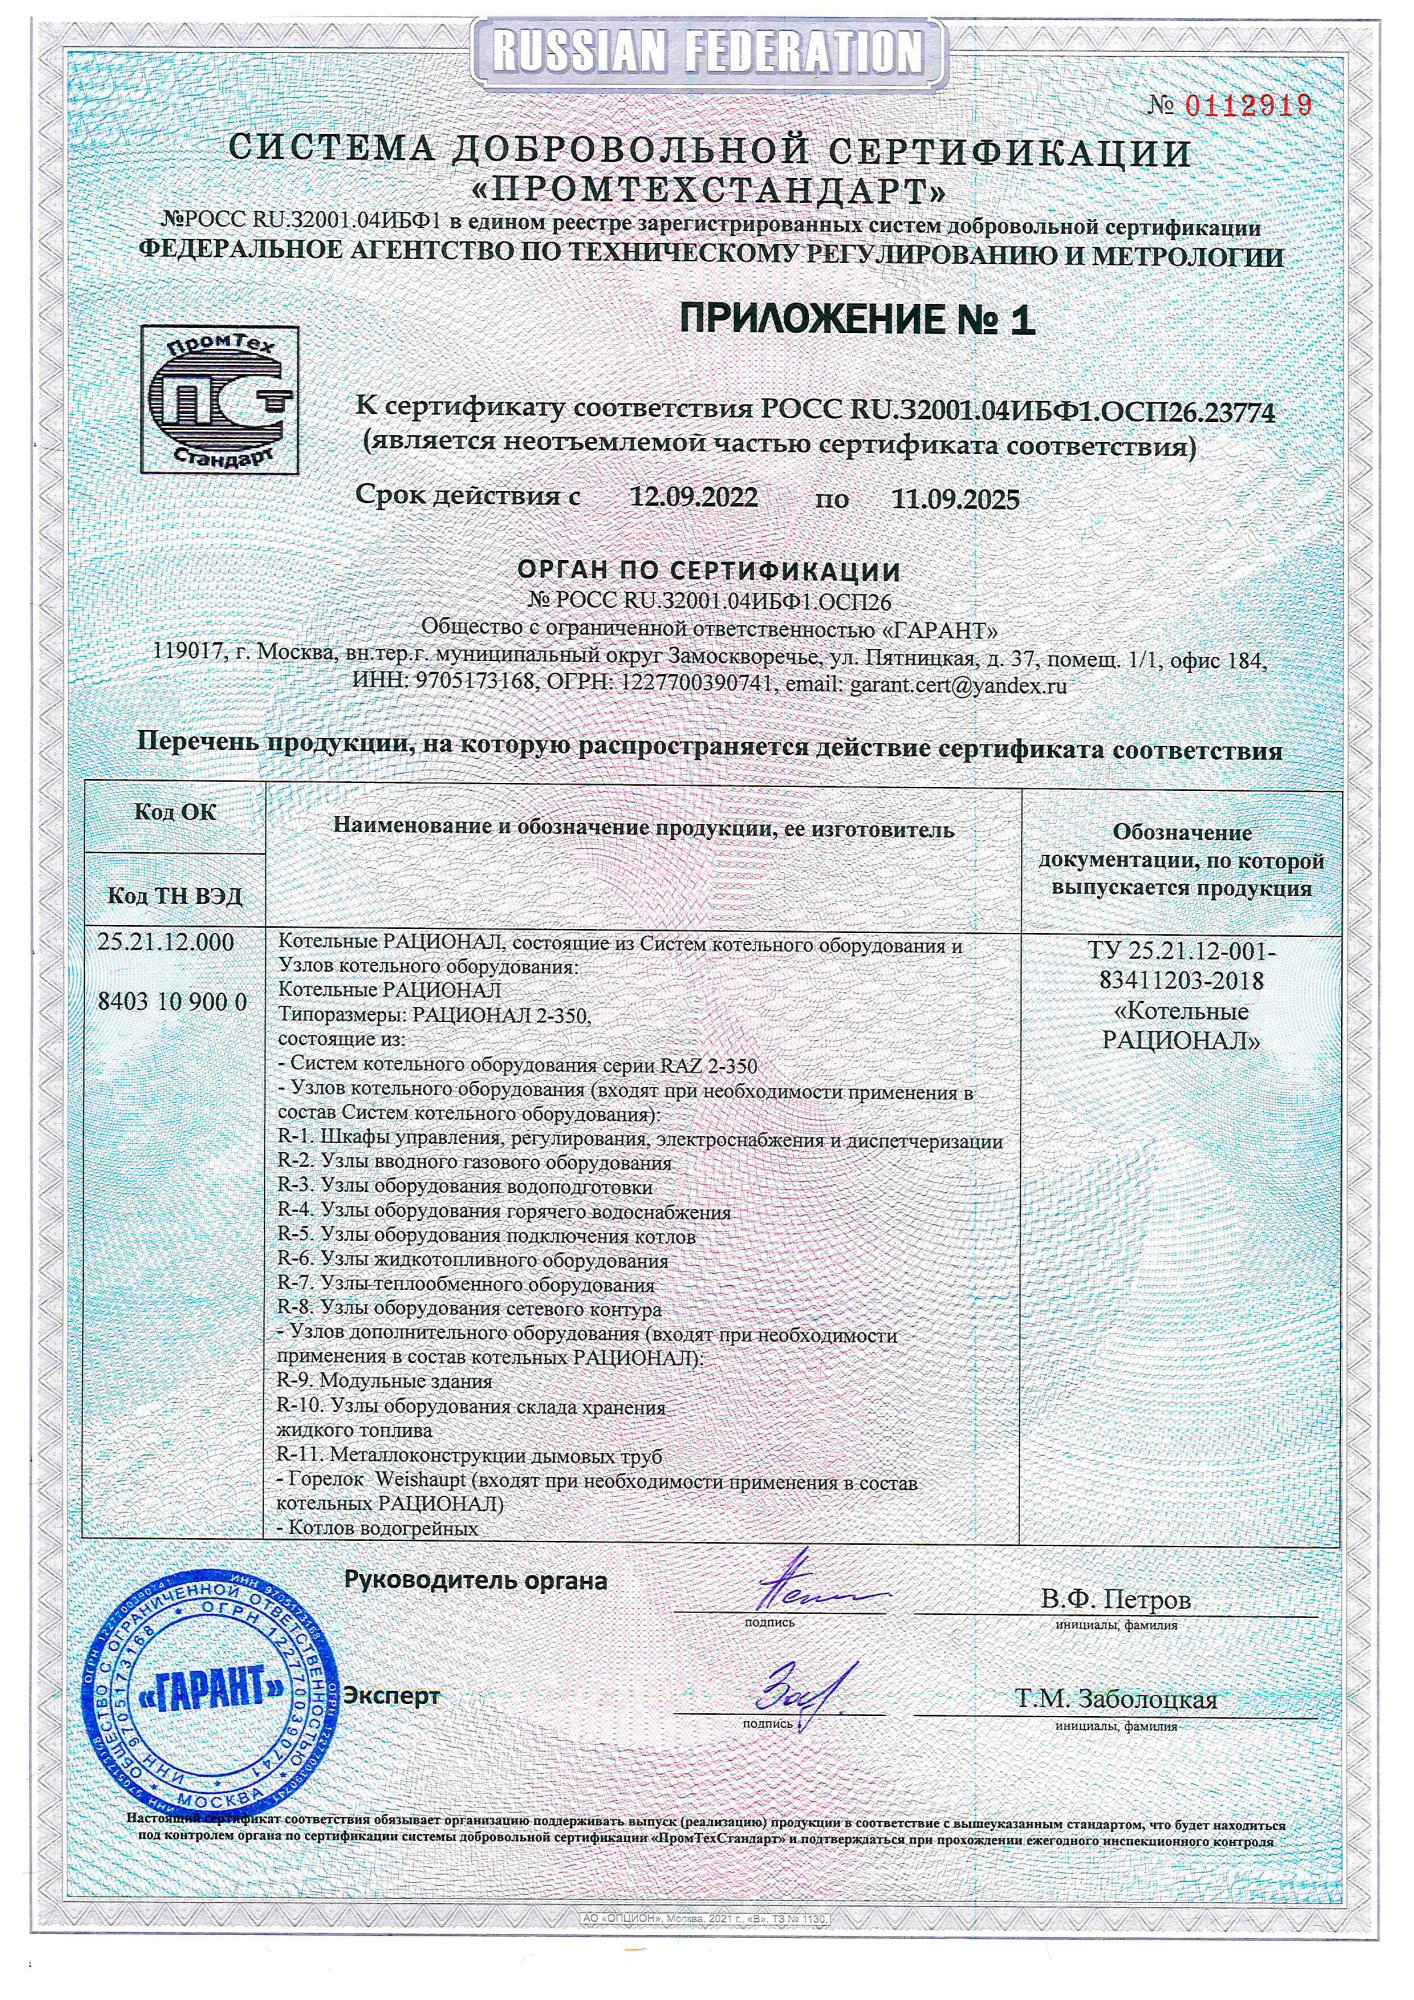 Сертификат соответствия РАЦИОНАЛ (Приложение)